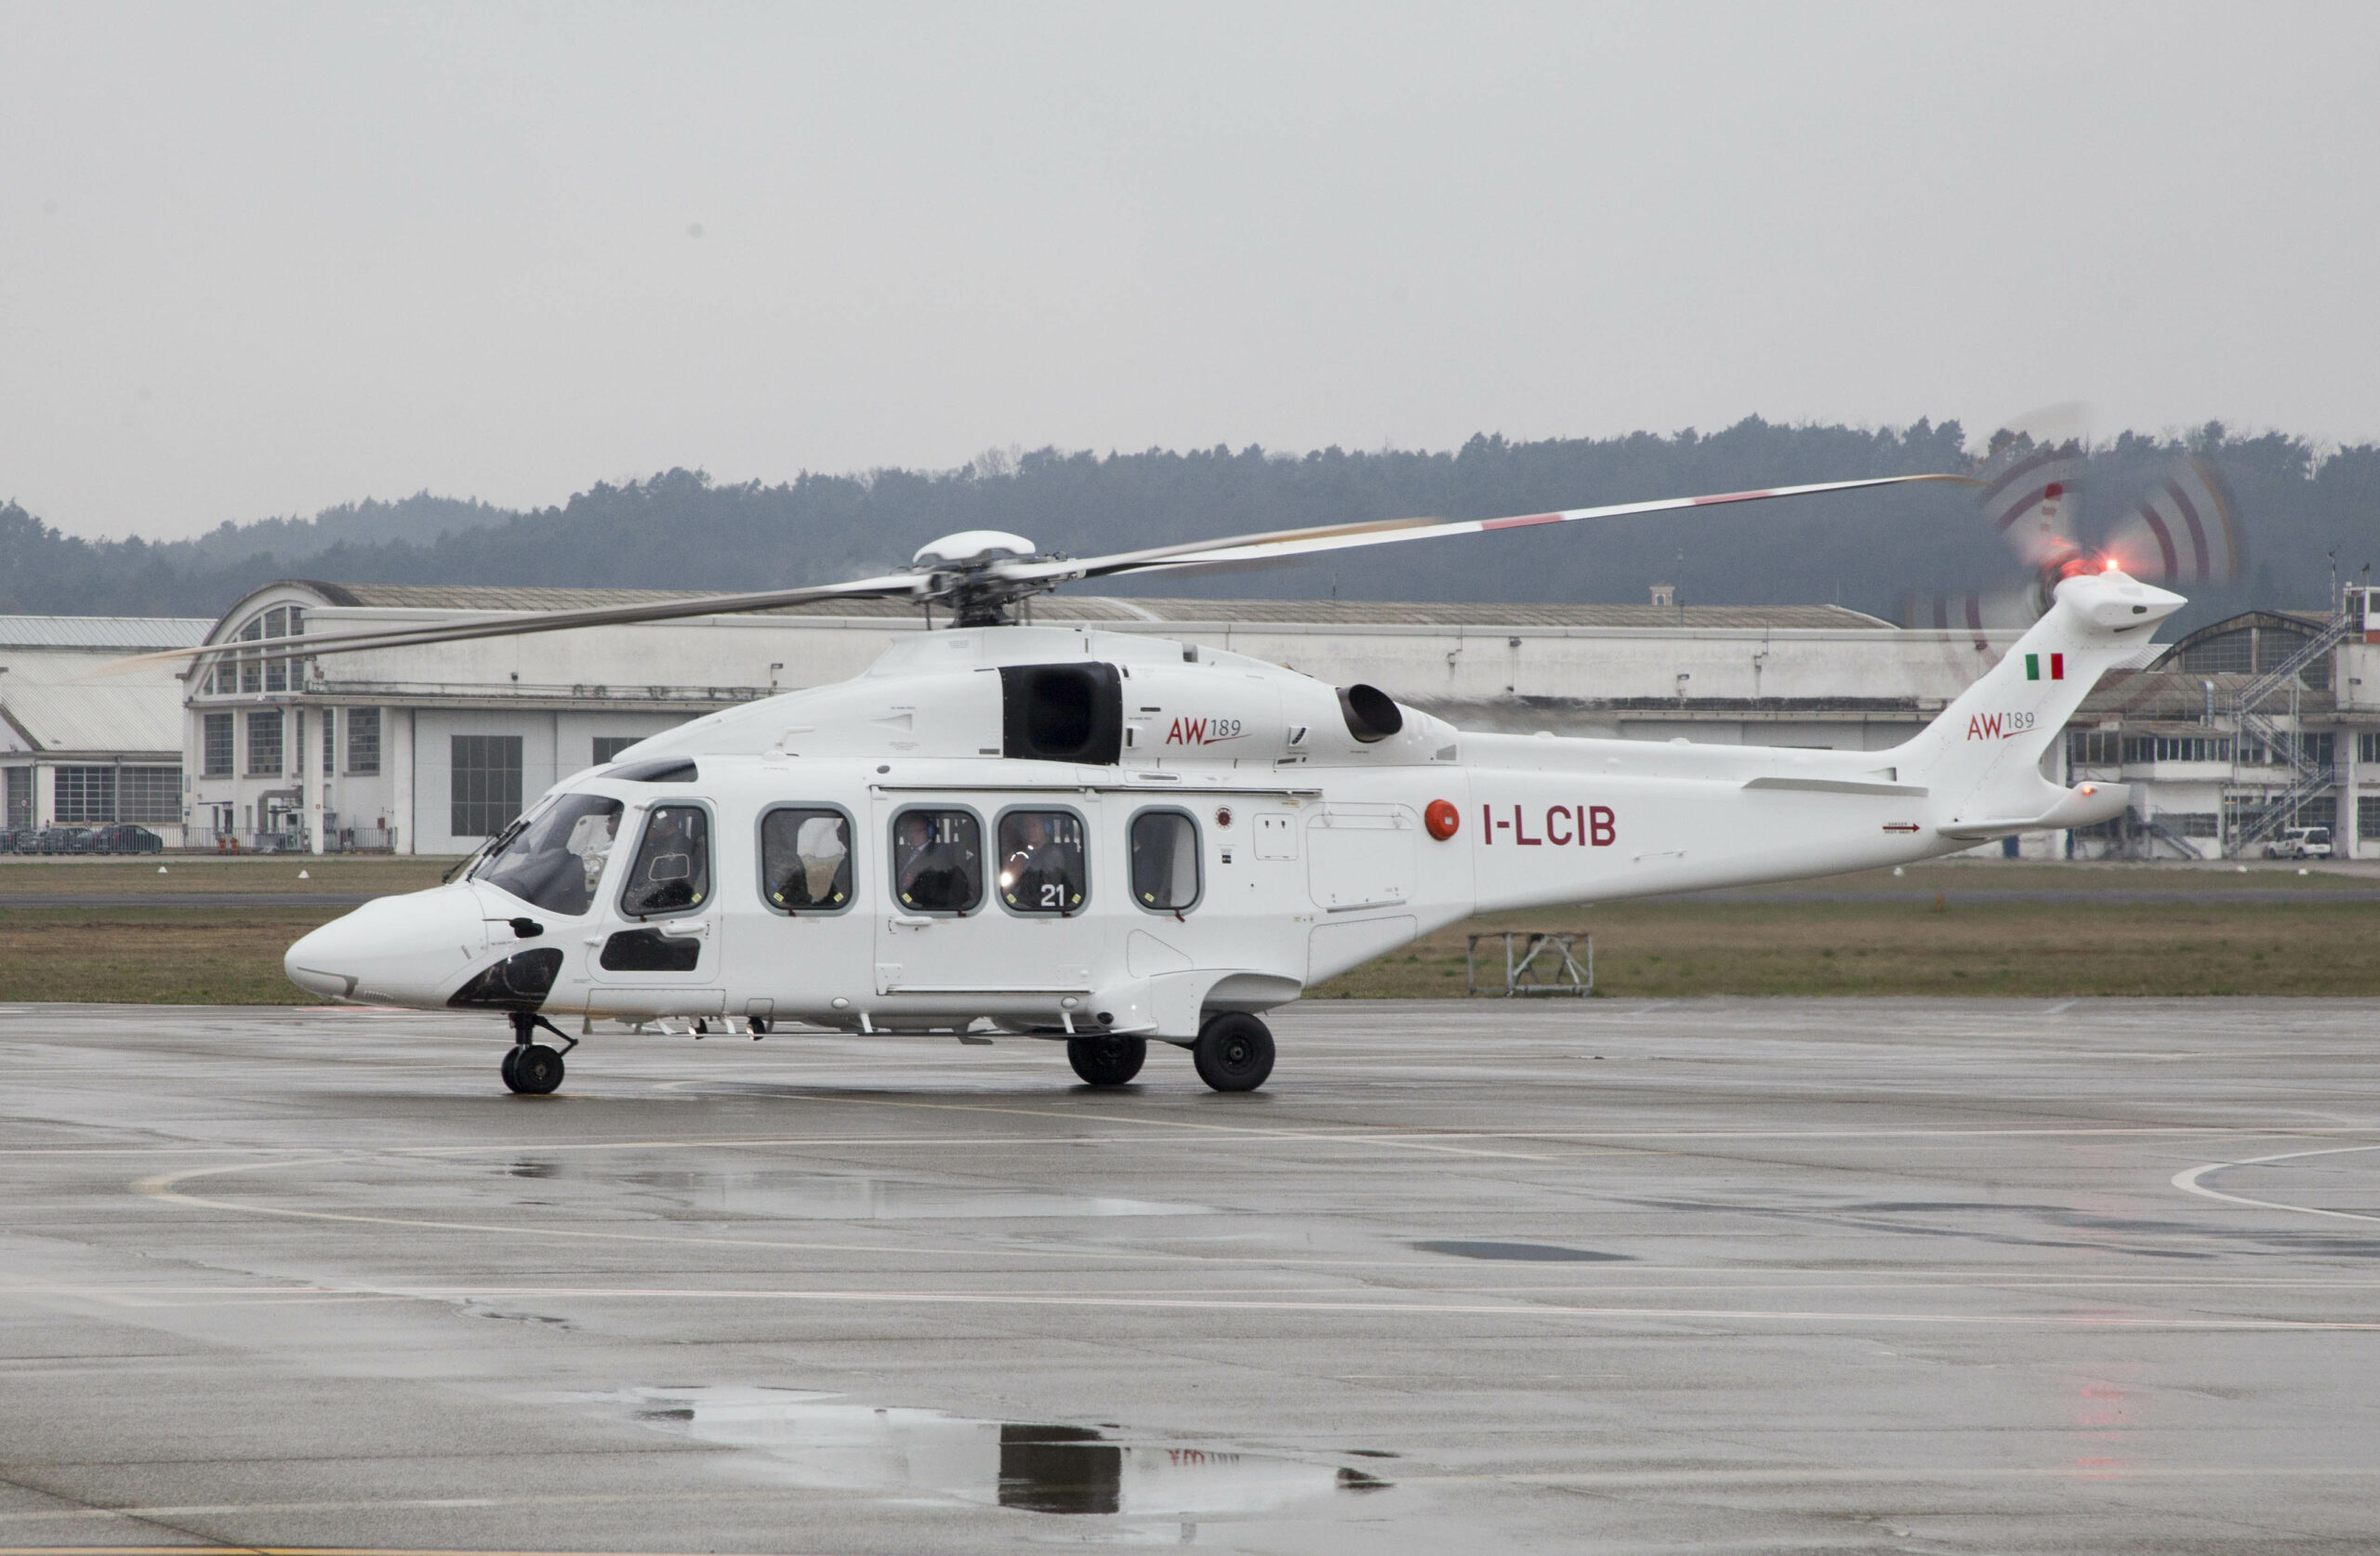 AW189 er et mellomstort helikopter med plass til 16 offshorearbeidere.